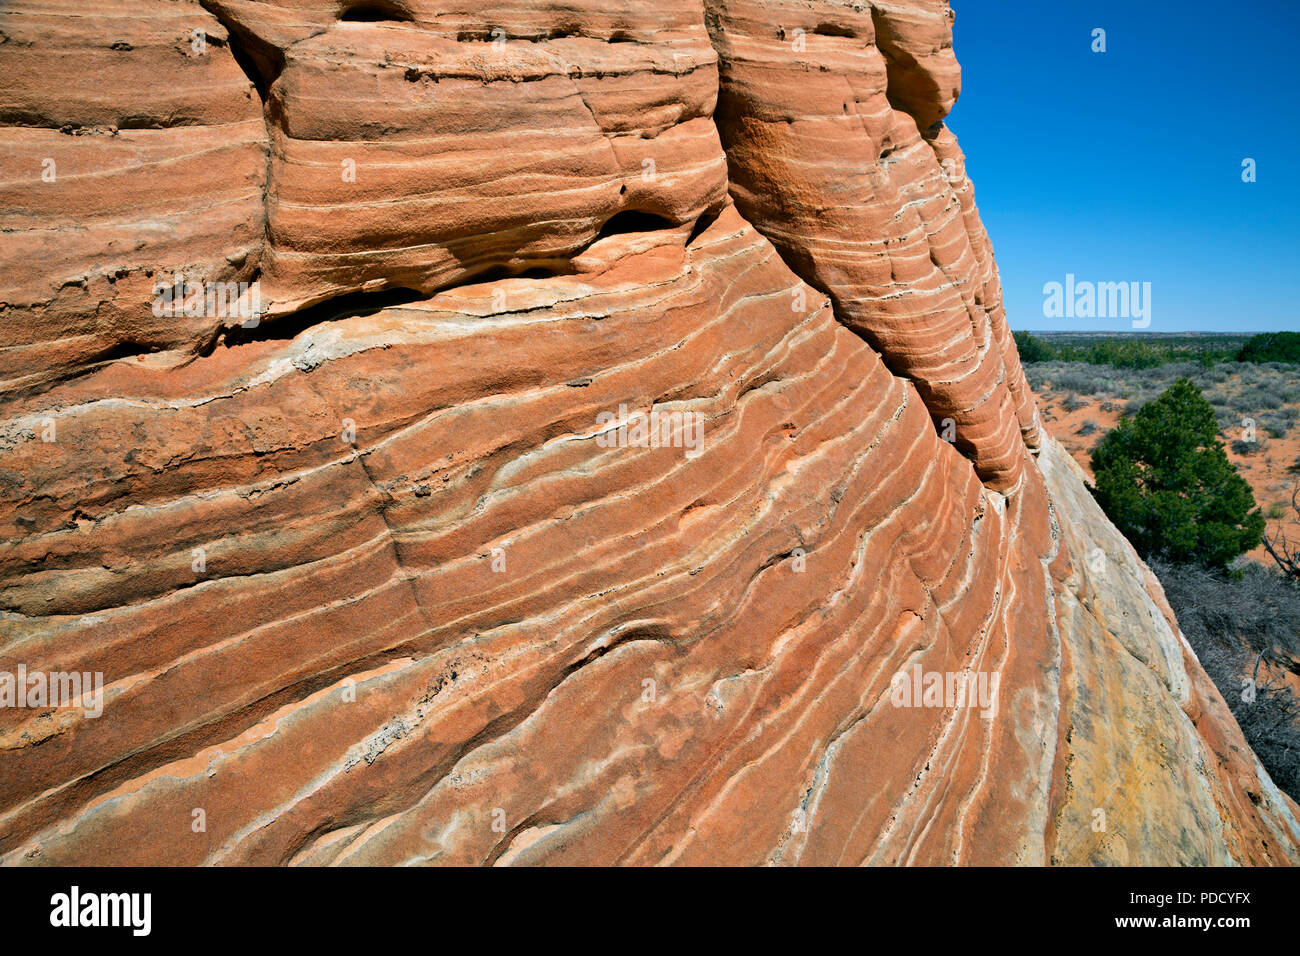 AZ 00239-00 ... ARIZONA - kontrastierende Schichten in den Sandstein Buttes in der Coyote Buttes South erlauben Bereich des Paria Canyon - Vermilion Cliffs gefunden Stockfoto